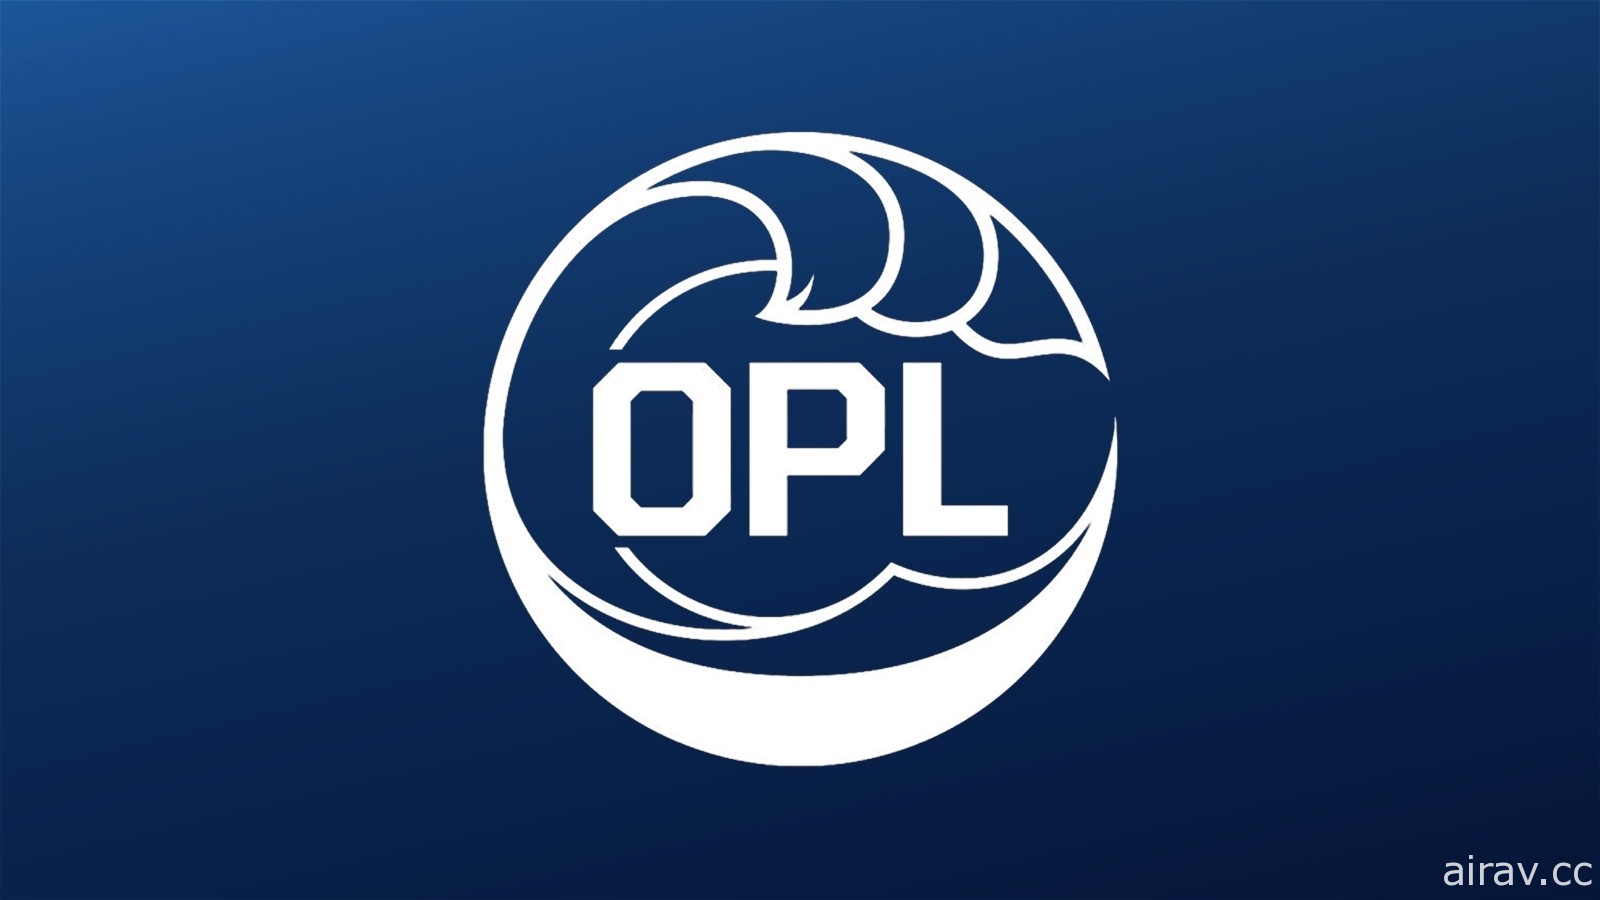 《英雄联盟》宣布大洋洲职业联赛 OPL 解散　2021 年赛季加入北美 LCS 赛区